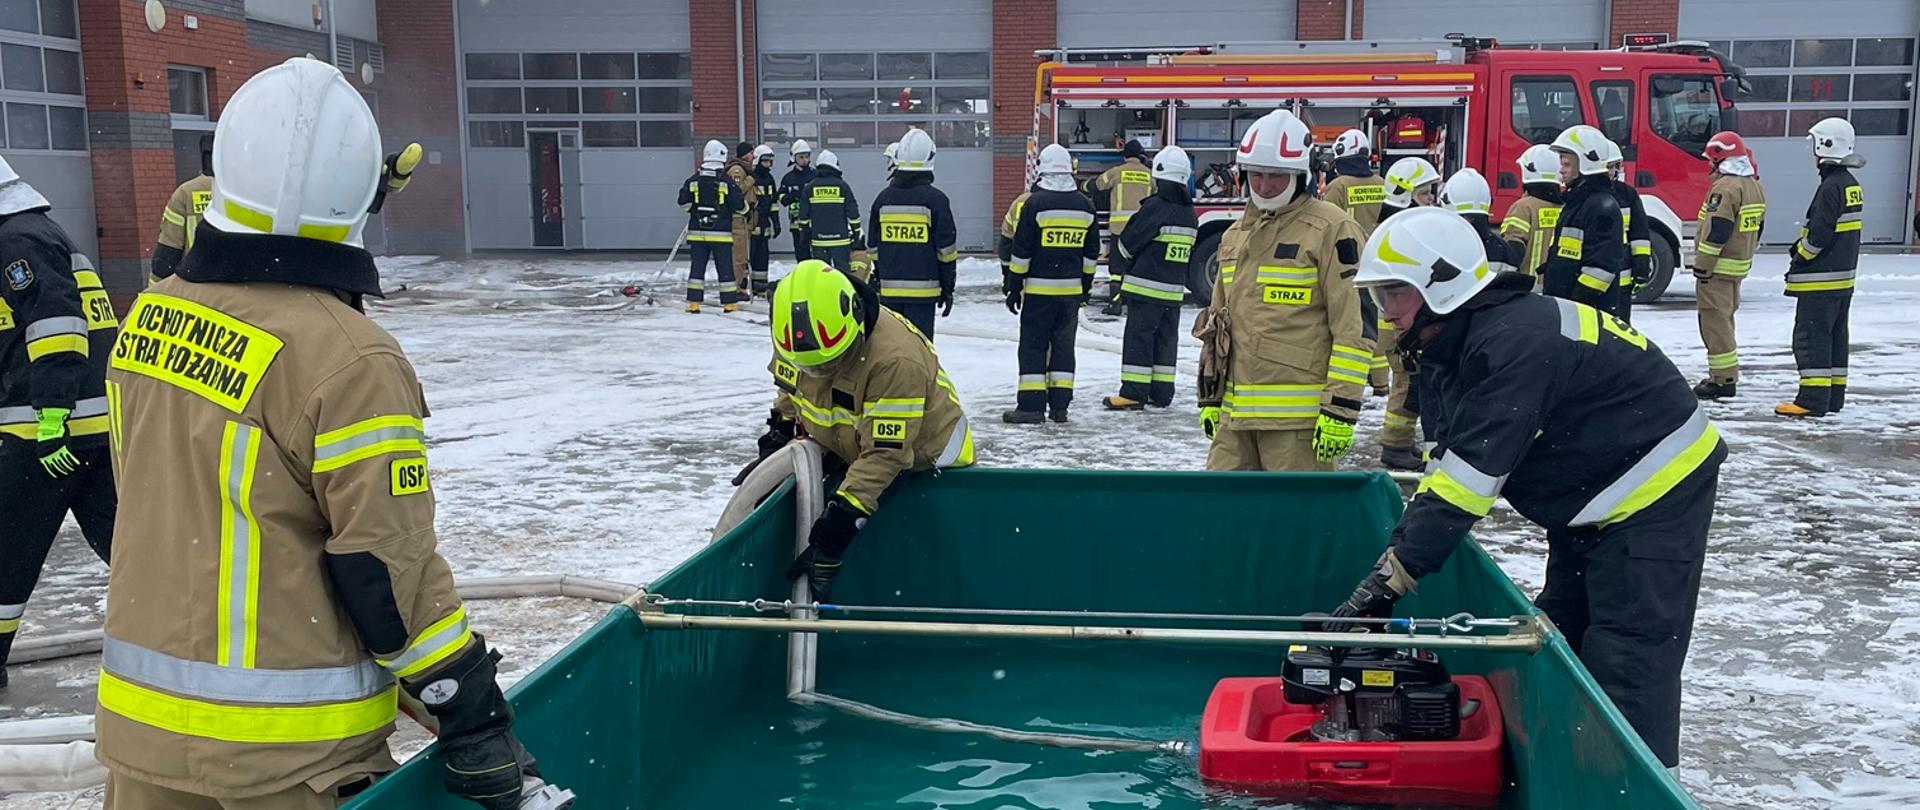 Strażacy podczas egzaminu praktycznego czerpią wodę ze zbiornika pompą pływającą